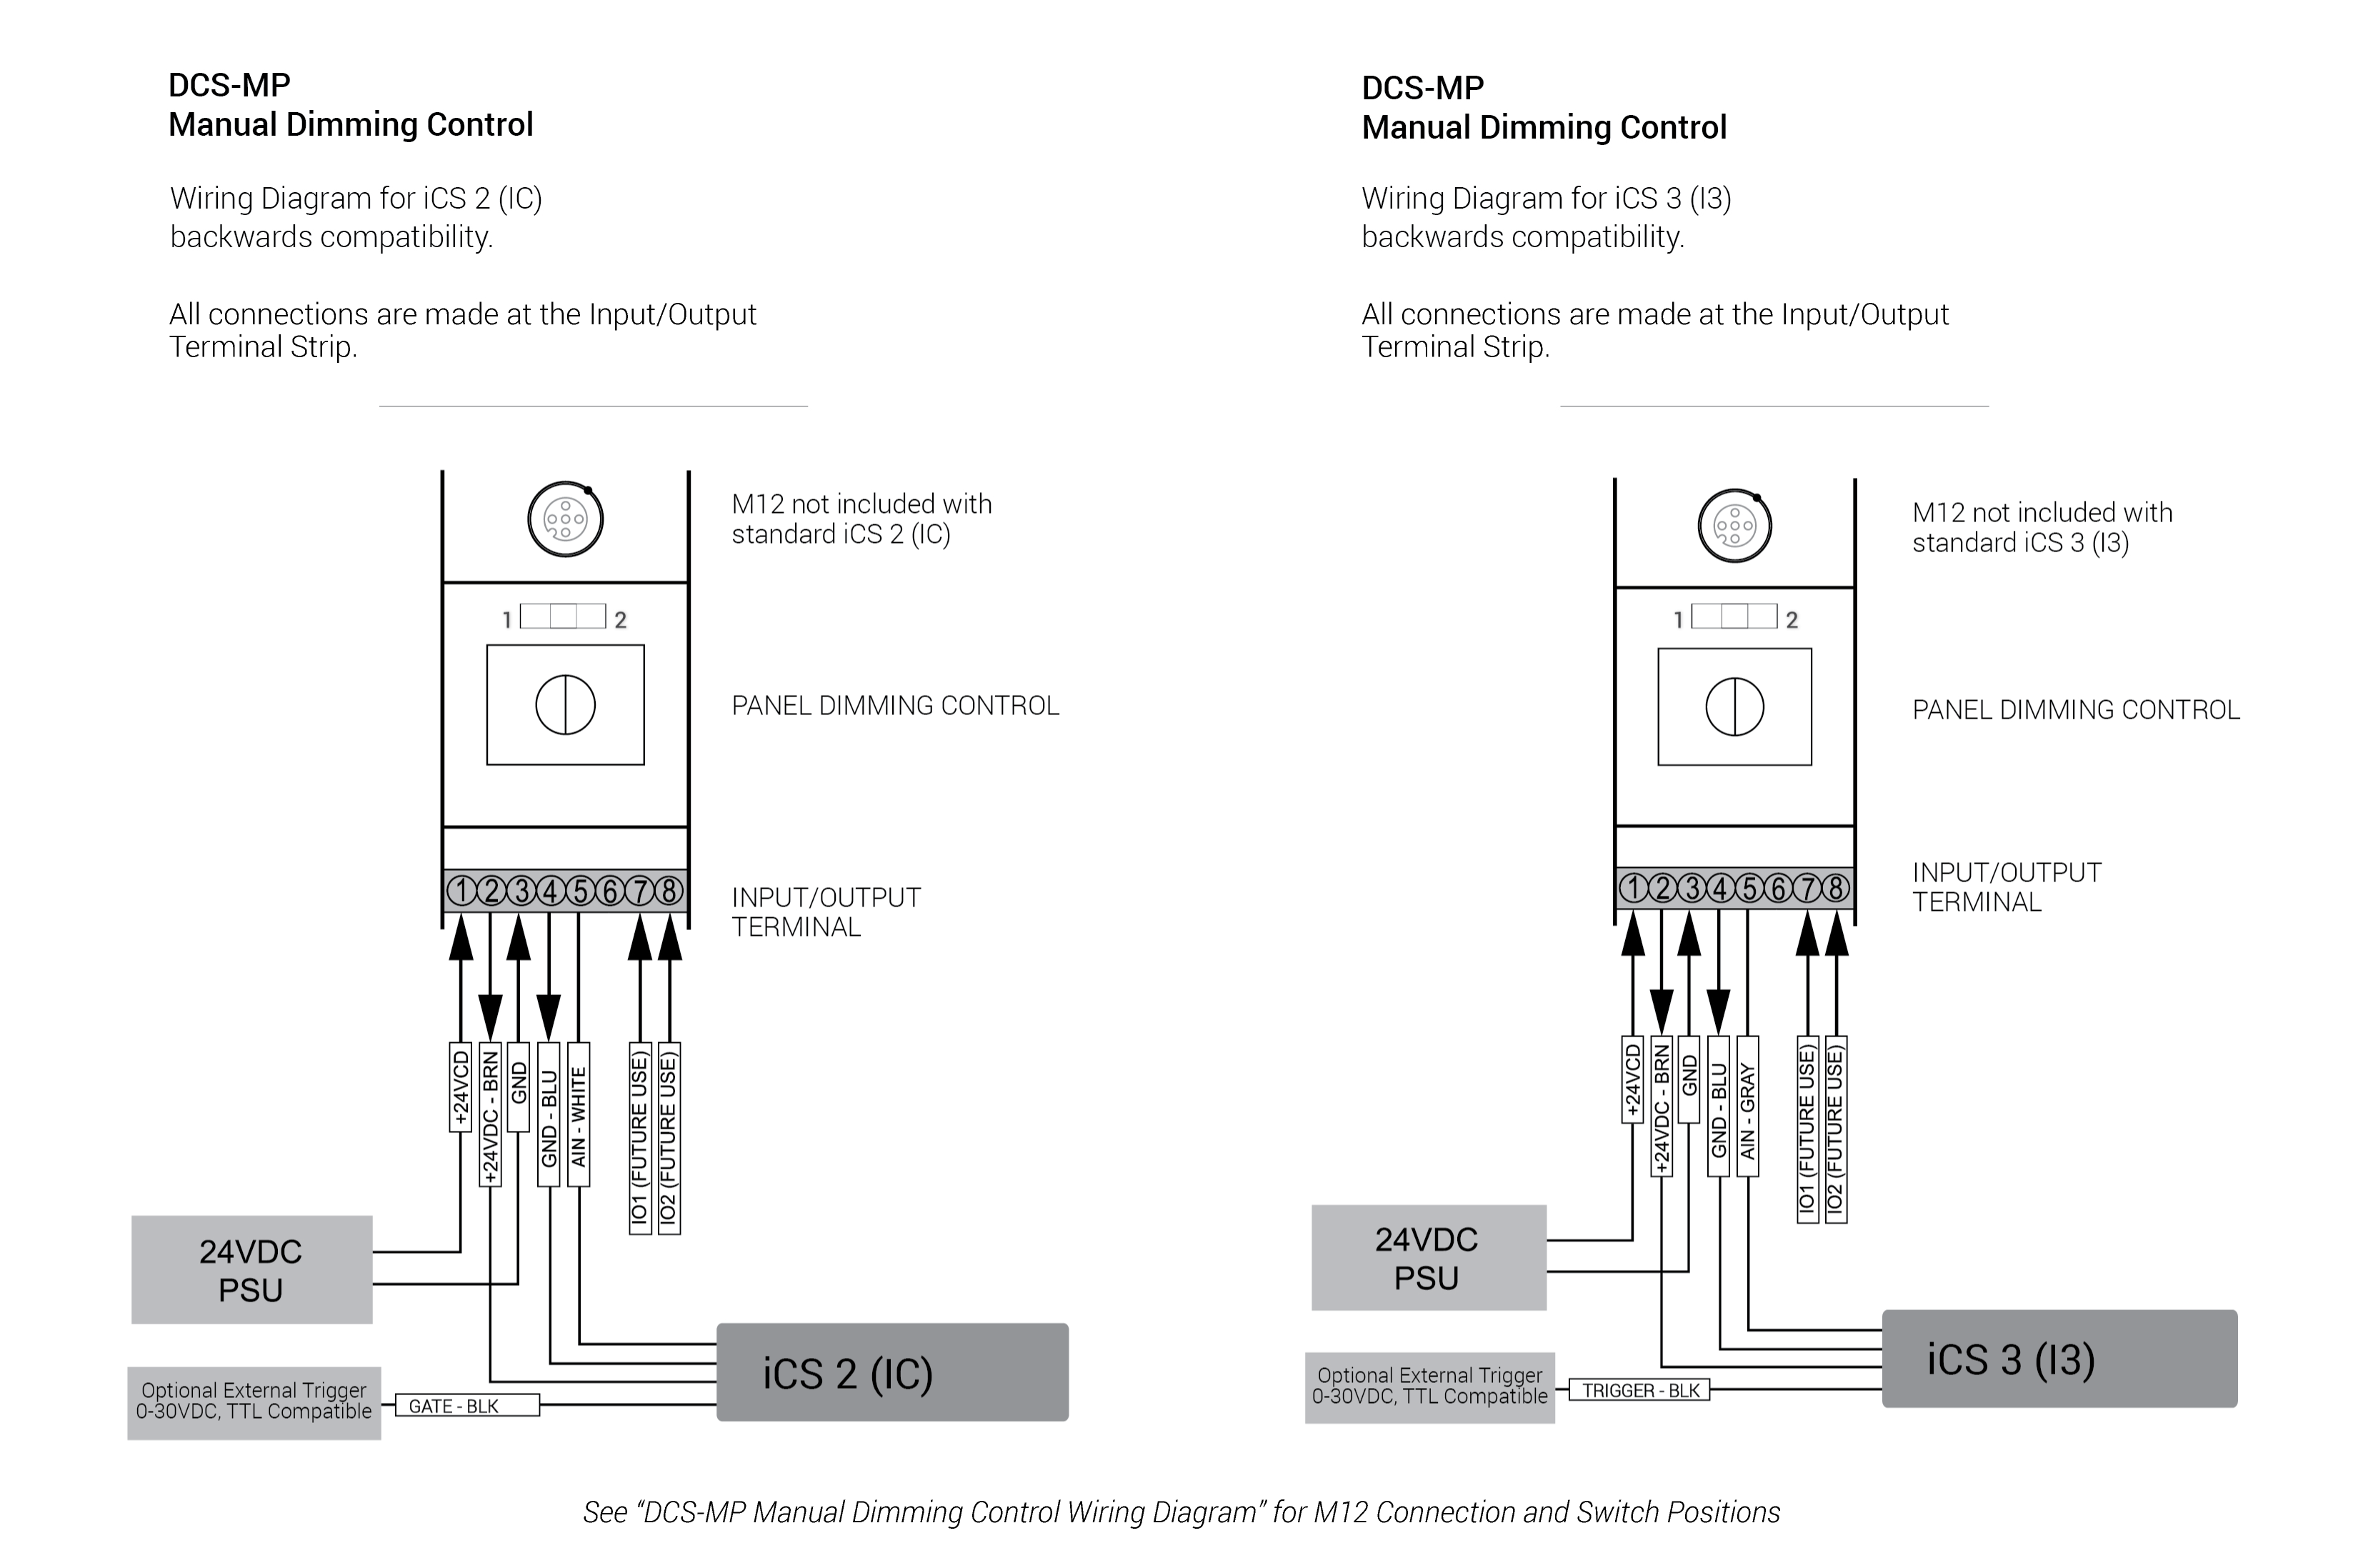 DCS MP Electrical Specs Manual Dimming Control iCS 3 iCS 2 01 02